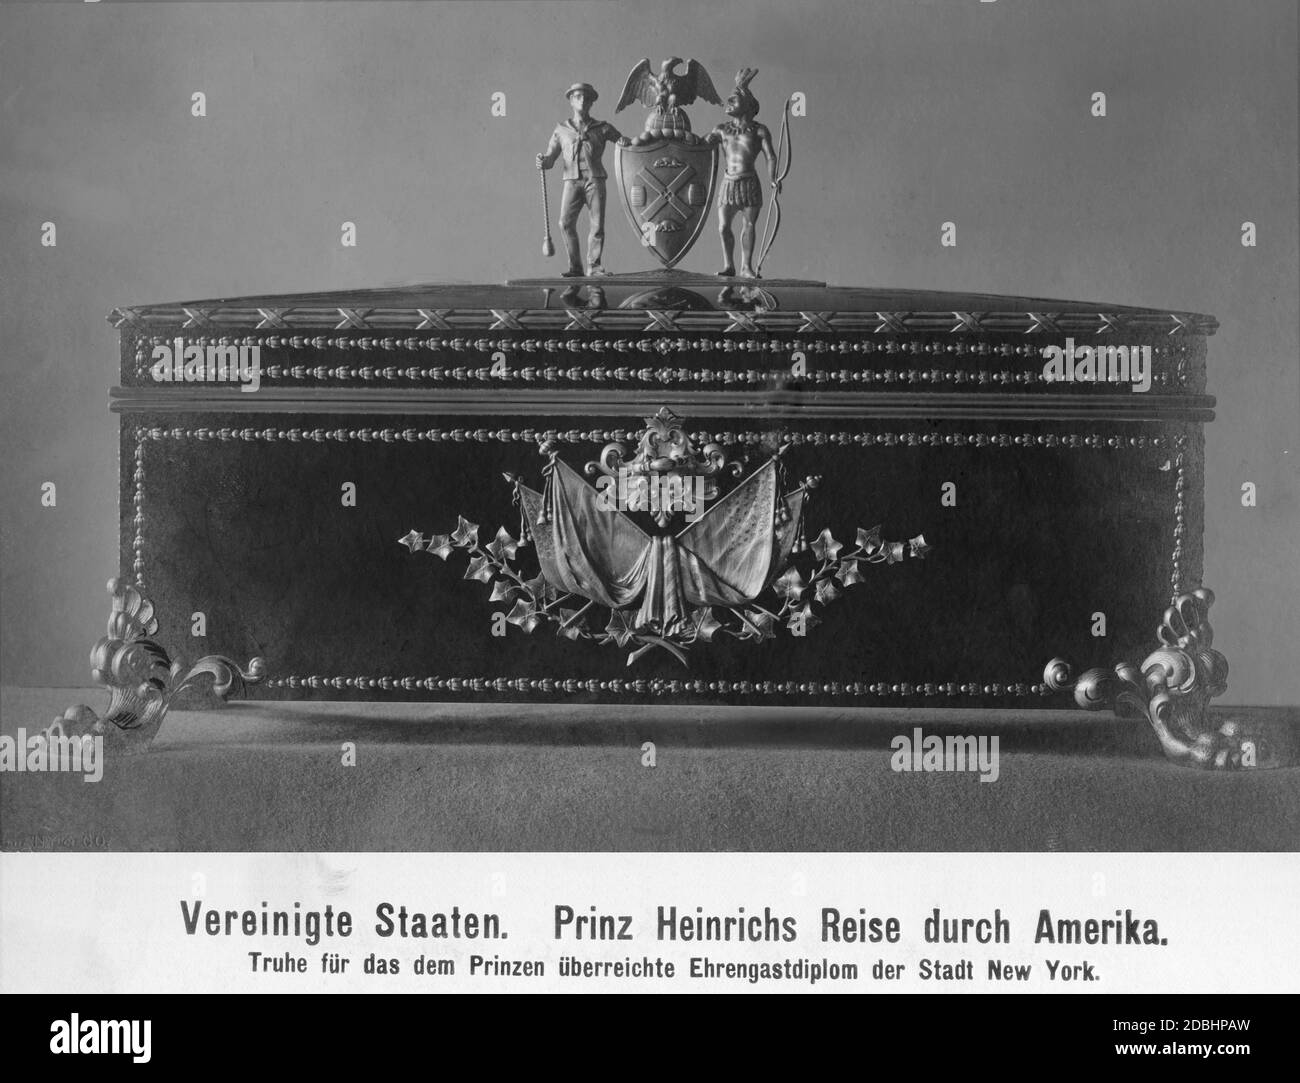 Das Foto zeigt eine reich verzierte Schachtel, in der die Ehrengasturkunde der Stadt New York dem Prinzen Heinrich von Preußen überreicht wurde. Undatierte Aufnahme. Stockfoto